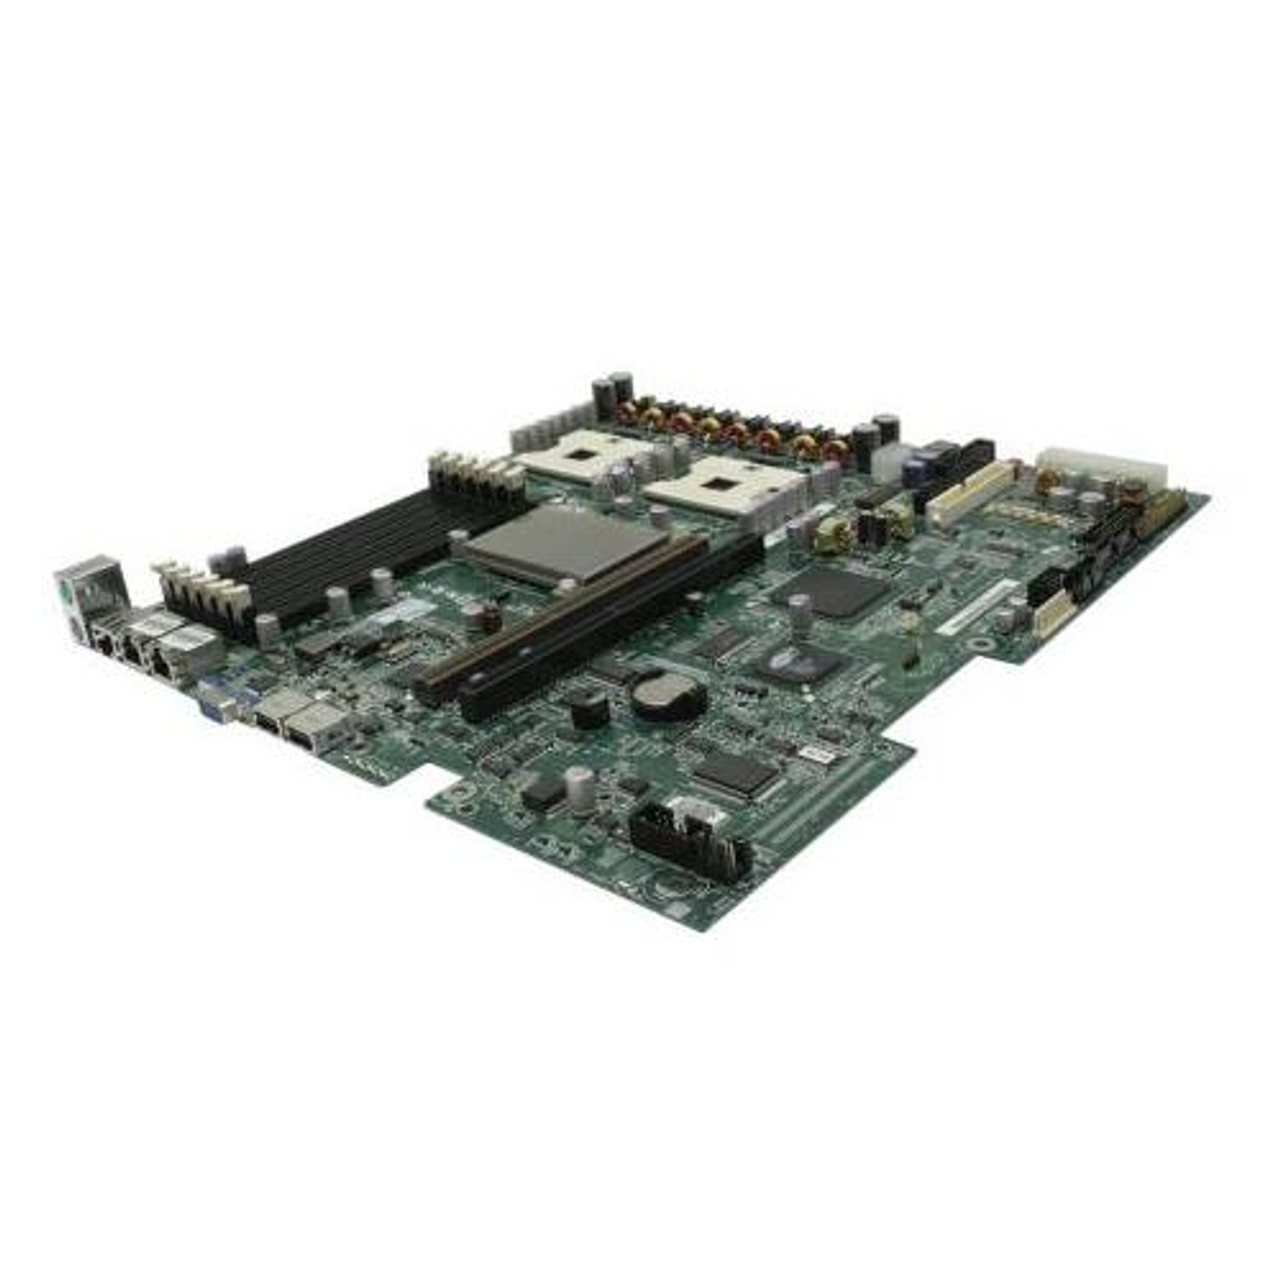 SE7320VP2D2 Intel SE7320VP2 Server Motherboard Intel Chipset